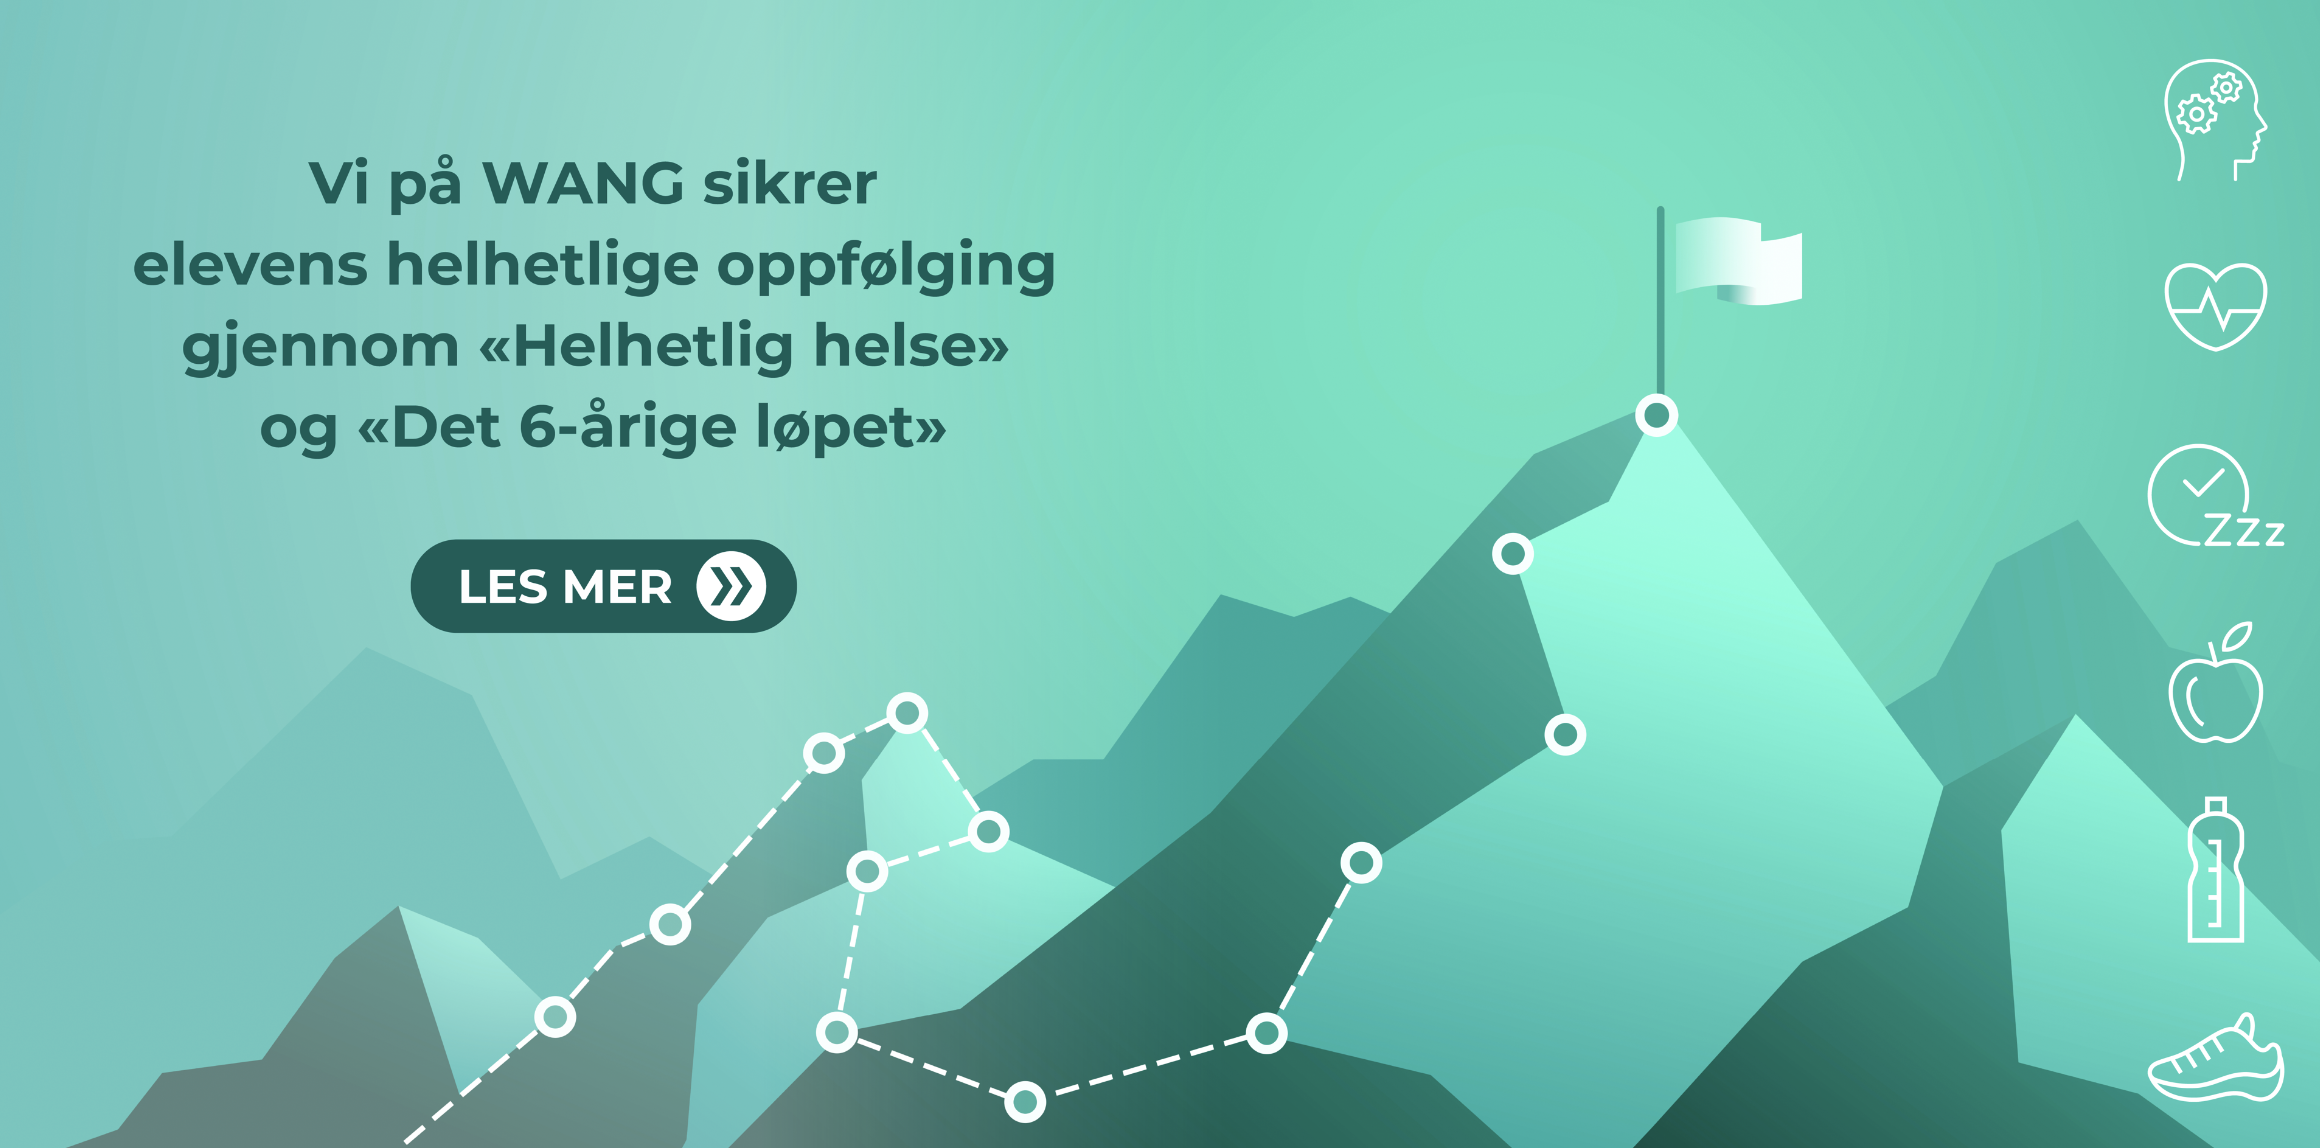 Reklamegrafikk på hjemmesiden i grønne toner som viser et fjellandskap med en stiplet sti som leder mot et flagg, ledsaget av helserelaterte ikoner og norsk tekst om helhetlige helseprogrammer.